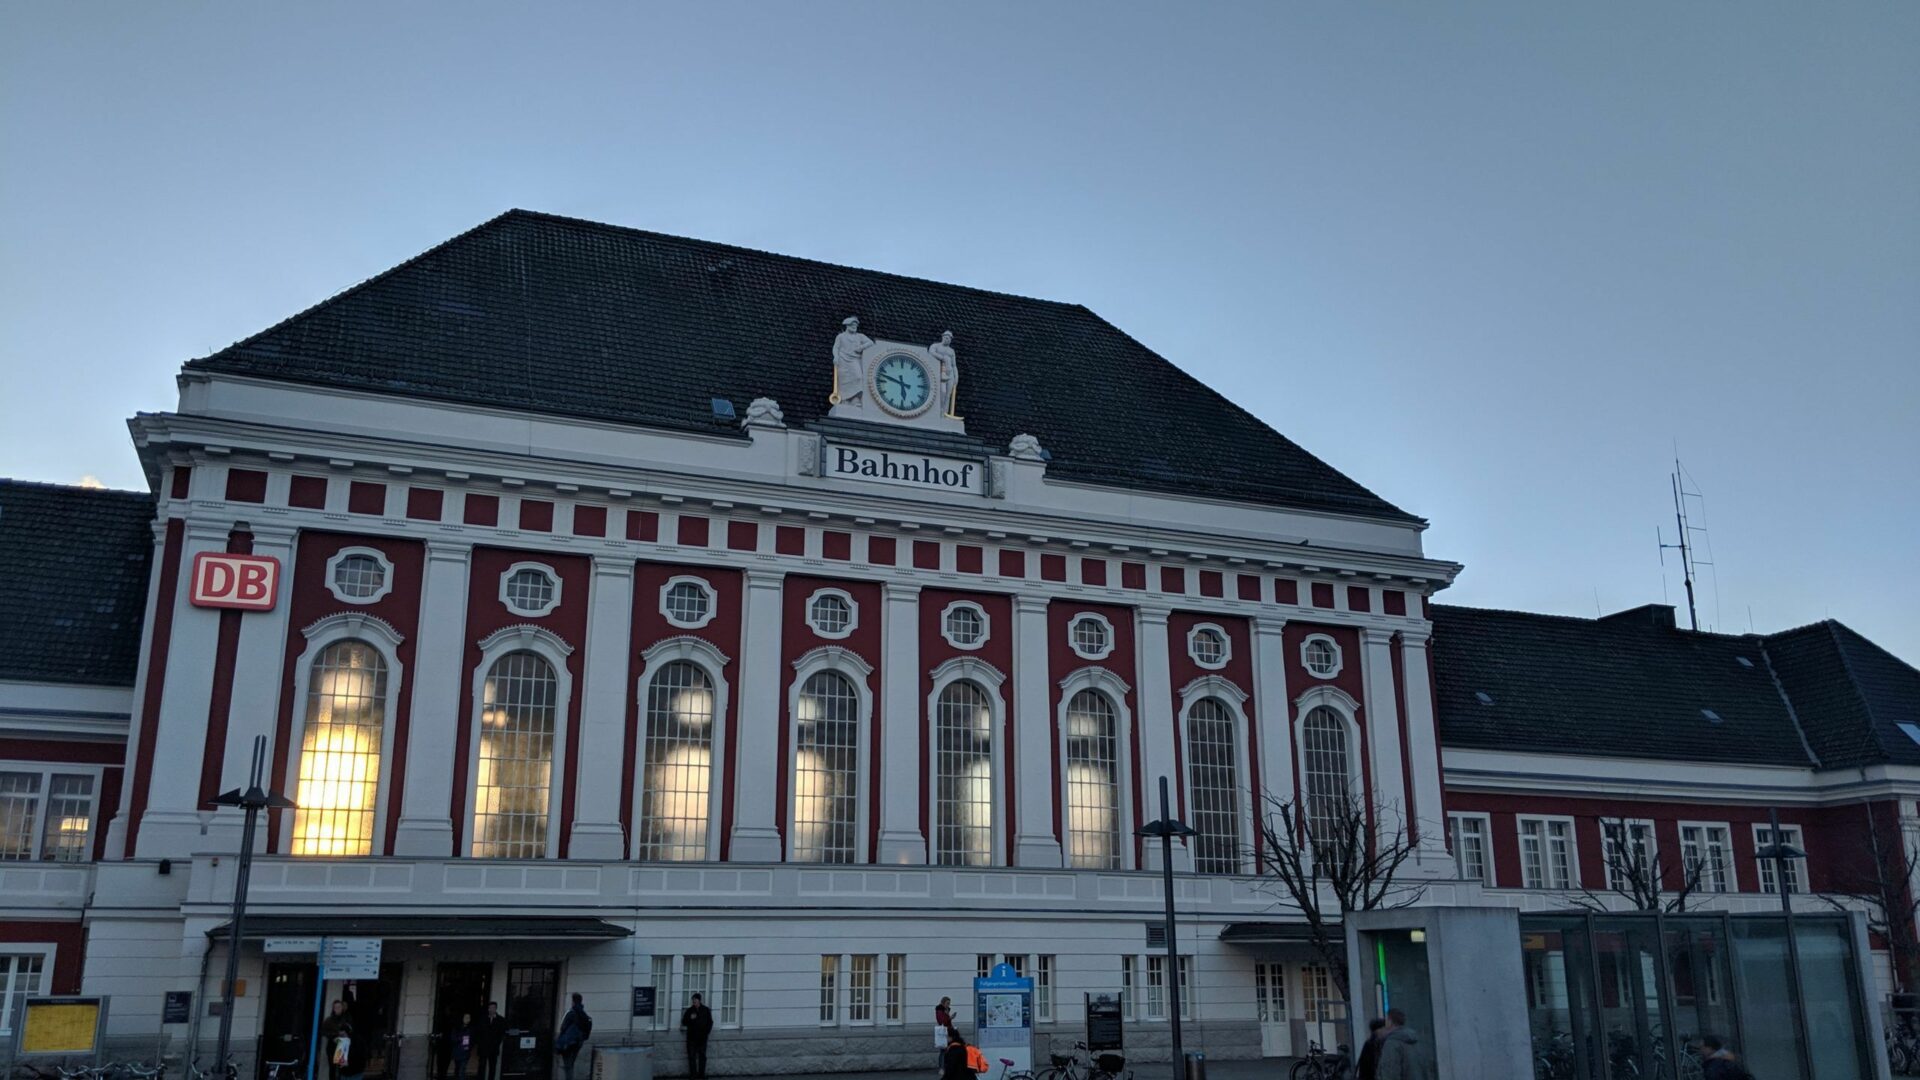 Außenansicht des Bahnhofs Hamm. Das Gebäude ist ein altes Bau mit hocen Fenstern und einer alten Bahnhofsuhr in der Mitte des Gebäudes.